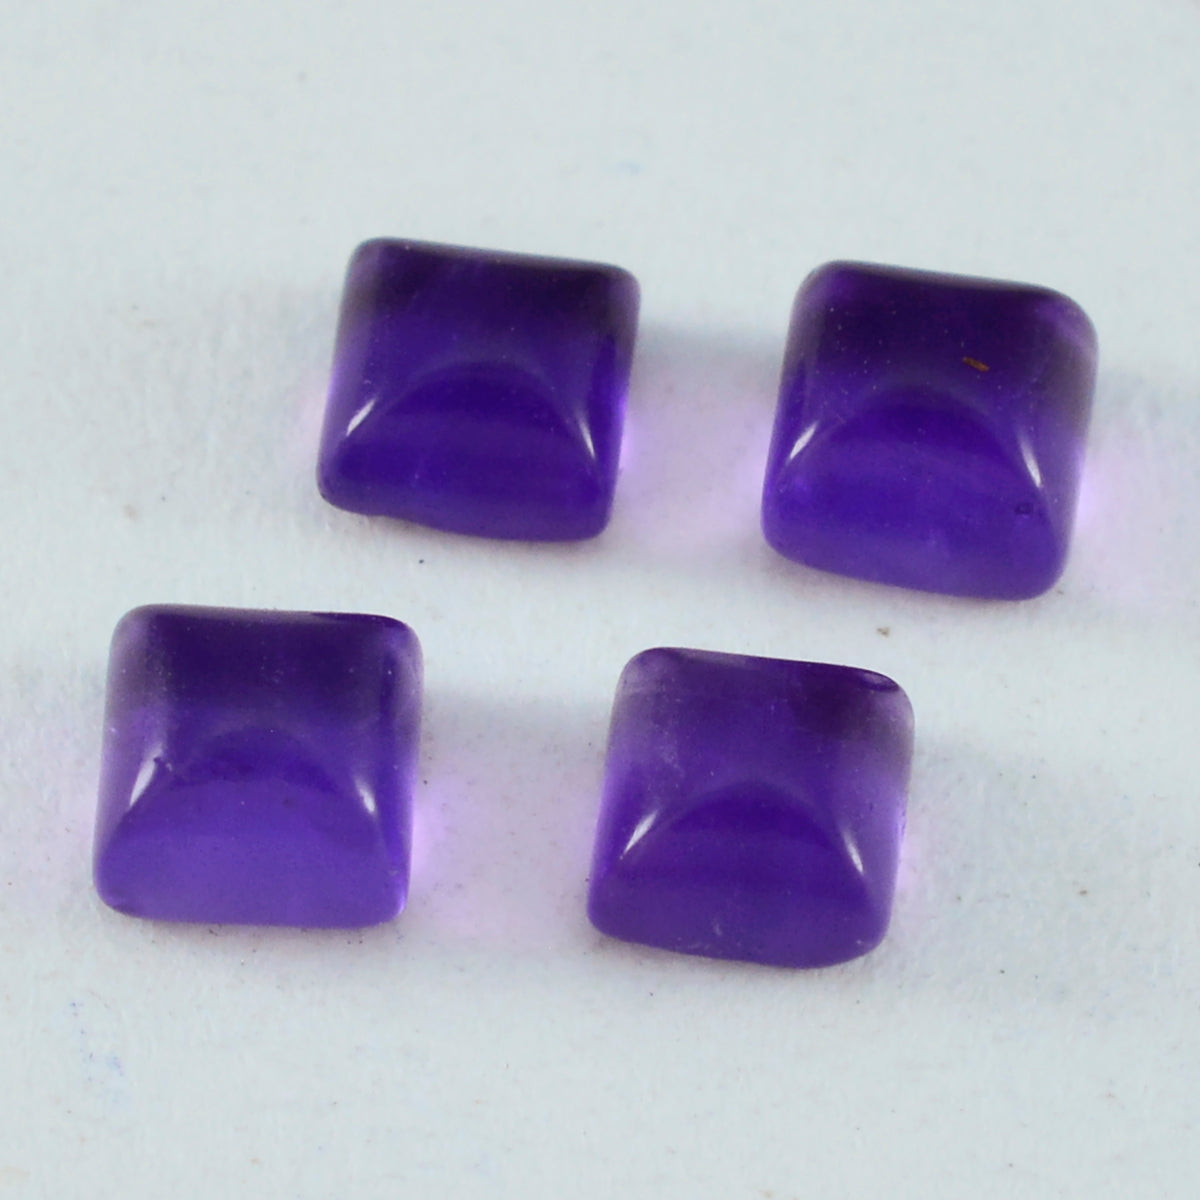 Riyogems 1pc cabochon d'améthyste violet 6x6 mm forme carrée belles pierres précieuses de qualité